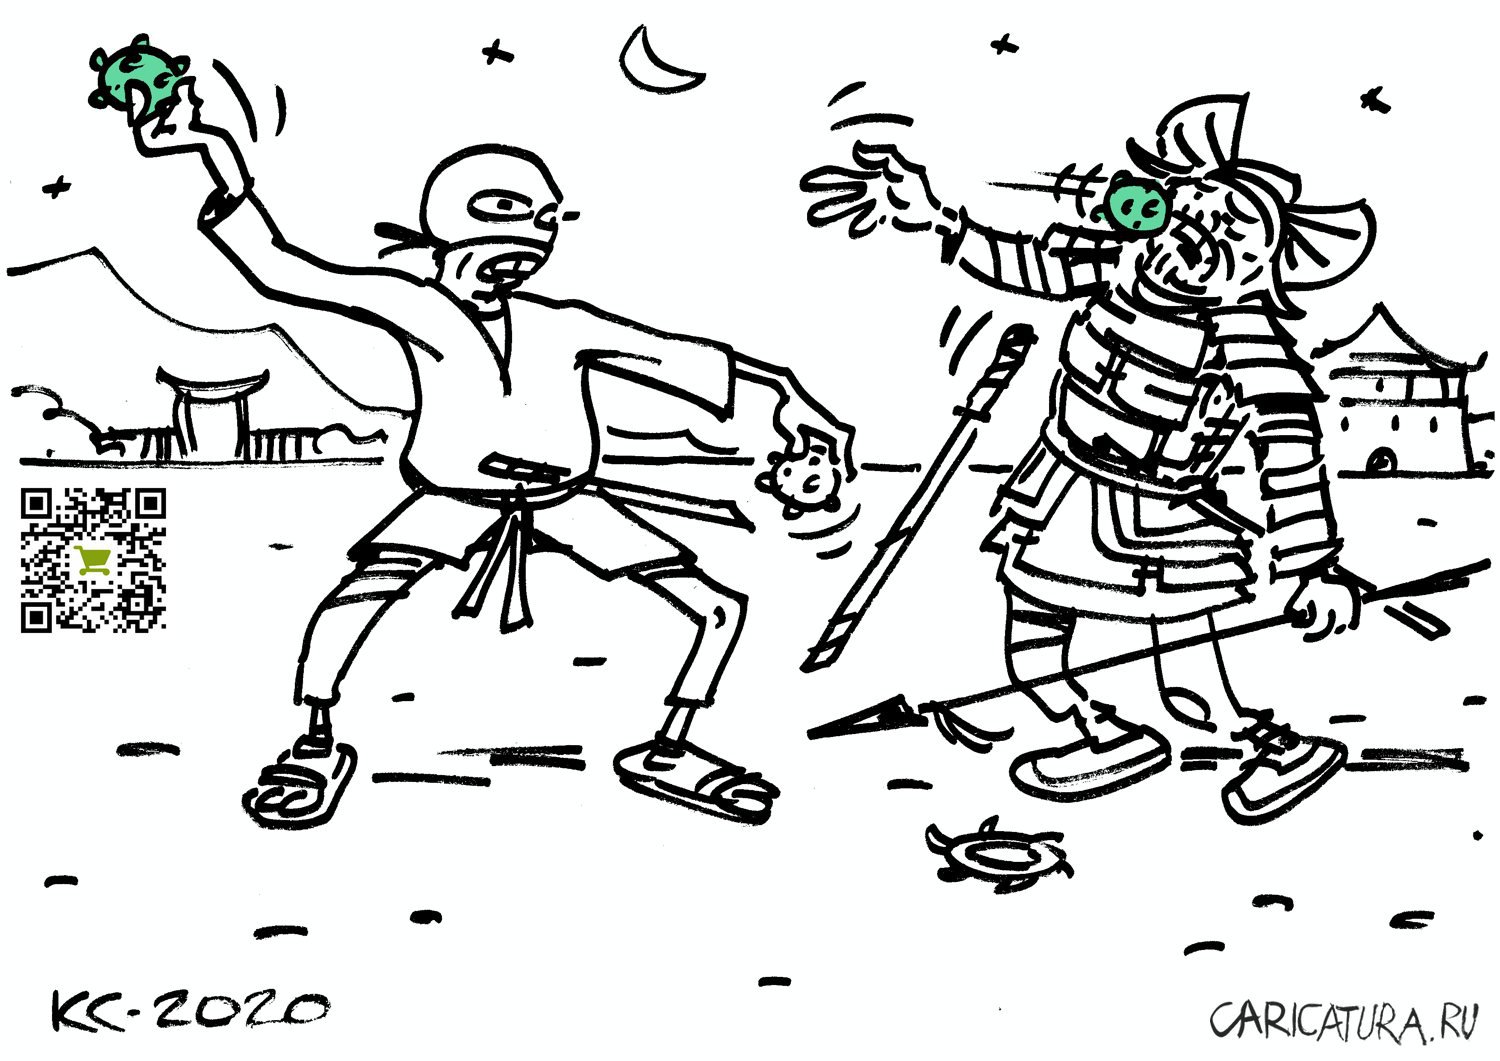 Карикатура "Оружие современных ниндзя", Вячеслав Капрельянц